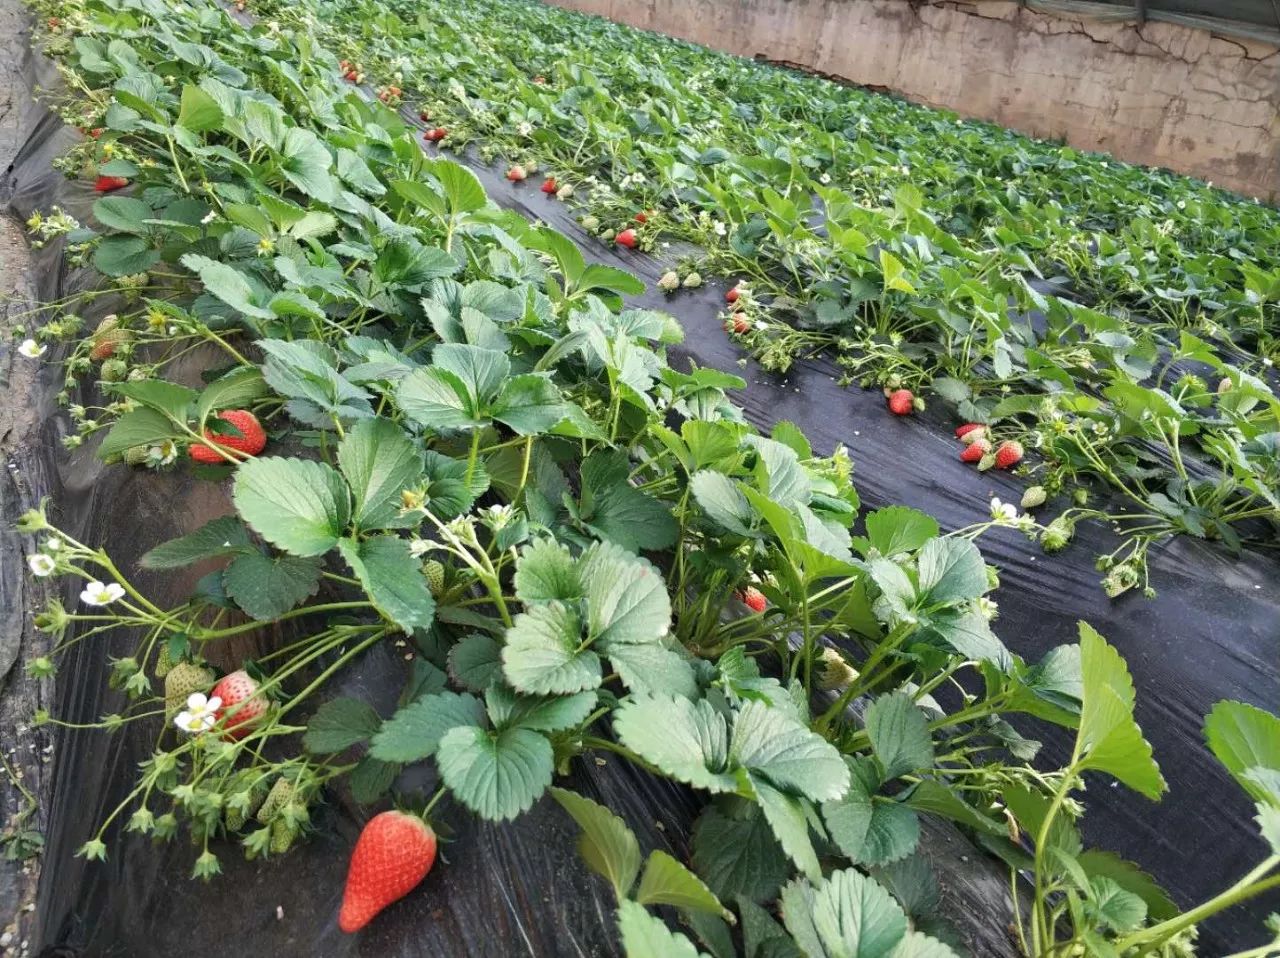 自驾路线:川垣大道——川垣六路——民和生态园 奶油草莓专业培养